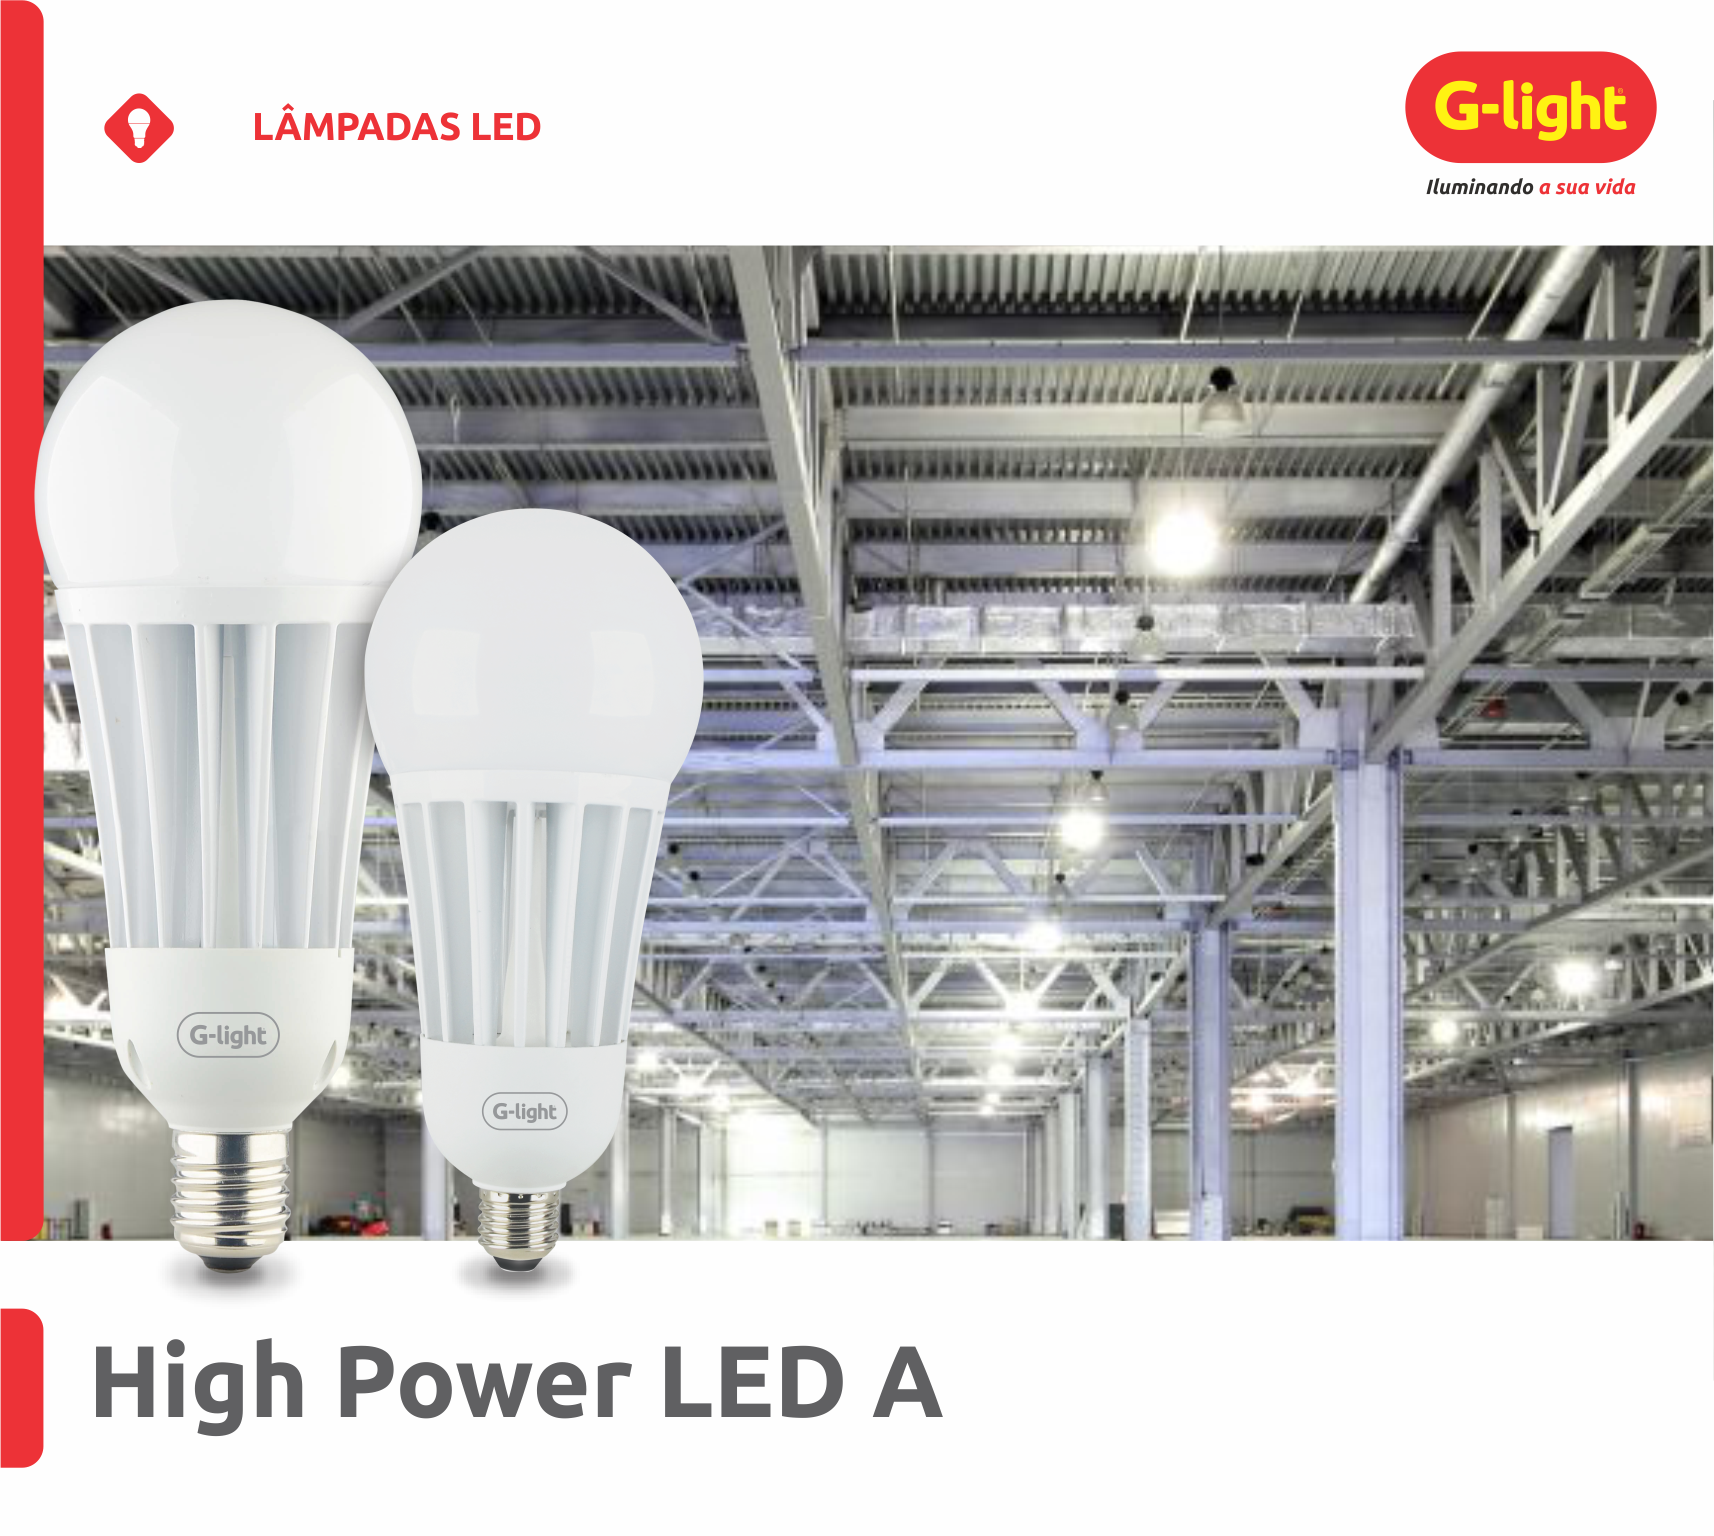 High Power LED A